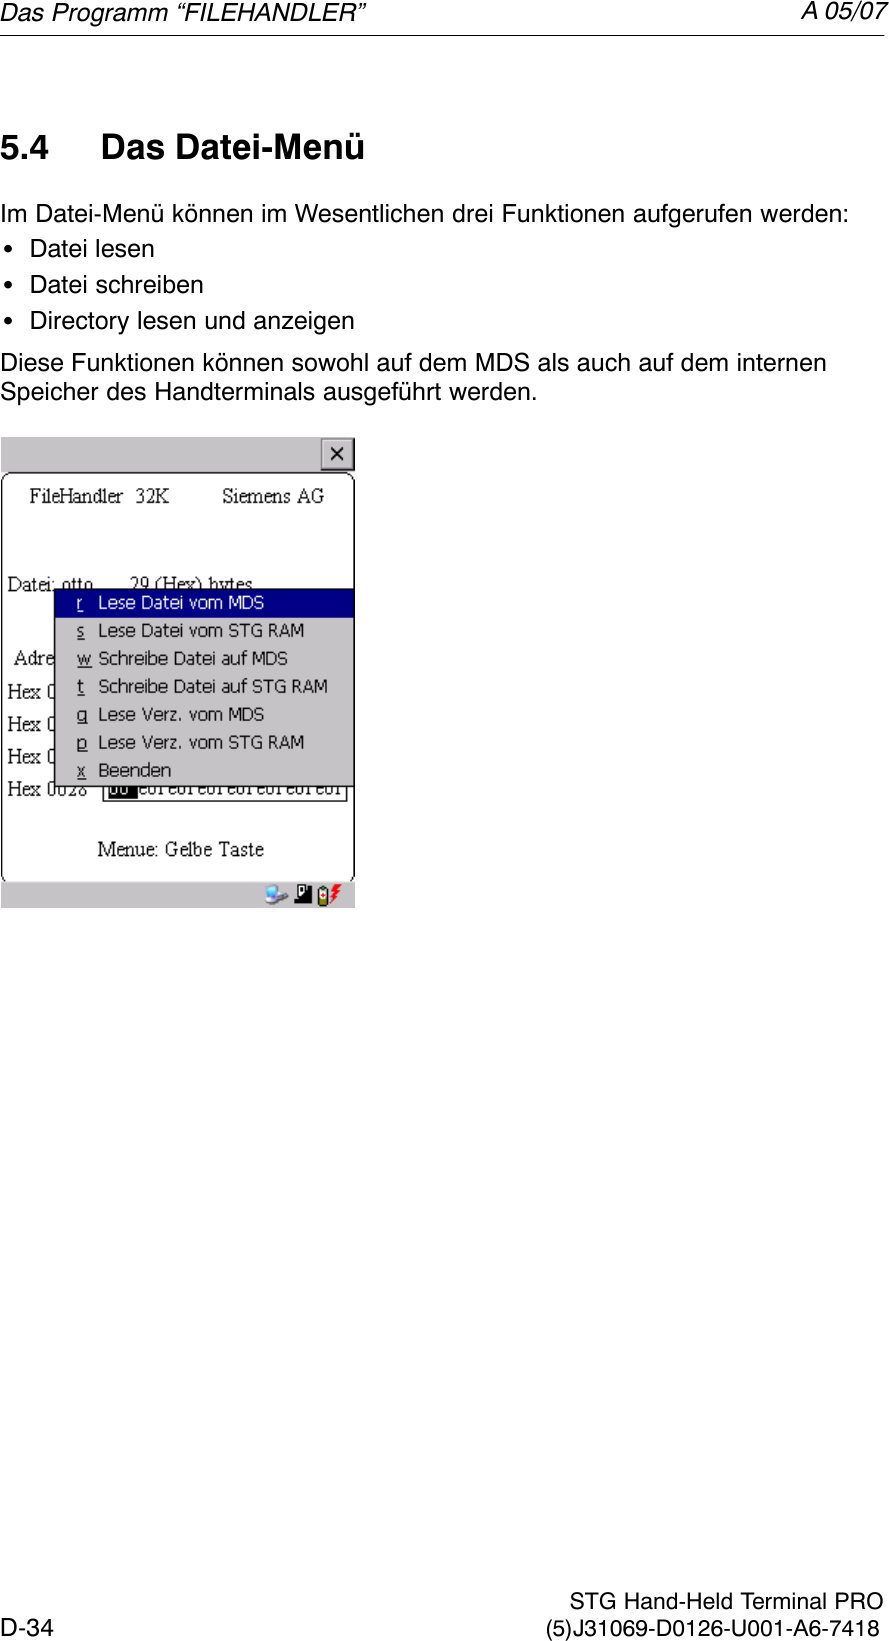 A 05/07D-34 STG Hand-Held Terminal PRO(5)J31069-D0126-U001-A6-74185.4 Das Datei-MenüIm Datei-Menü können im Wesentlichen drei Funktionen aufgerufen werden:SDatei lesenSDatei schreibenSDirectory lesen und anzeigenDiese Funktionen können sowohl auf dem MDS als auch auf dem internenSpeicher des Handterminals ausgeführt werden.Das Programm “FILEHANDLER”